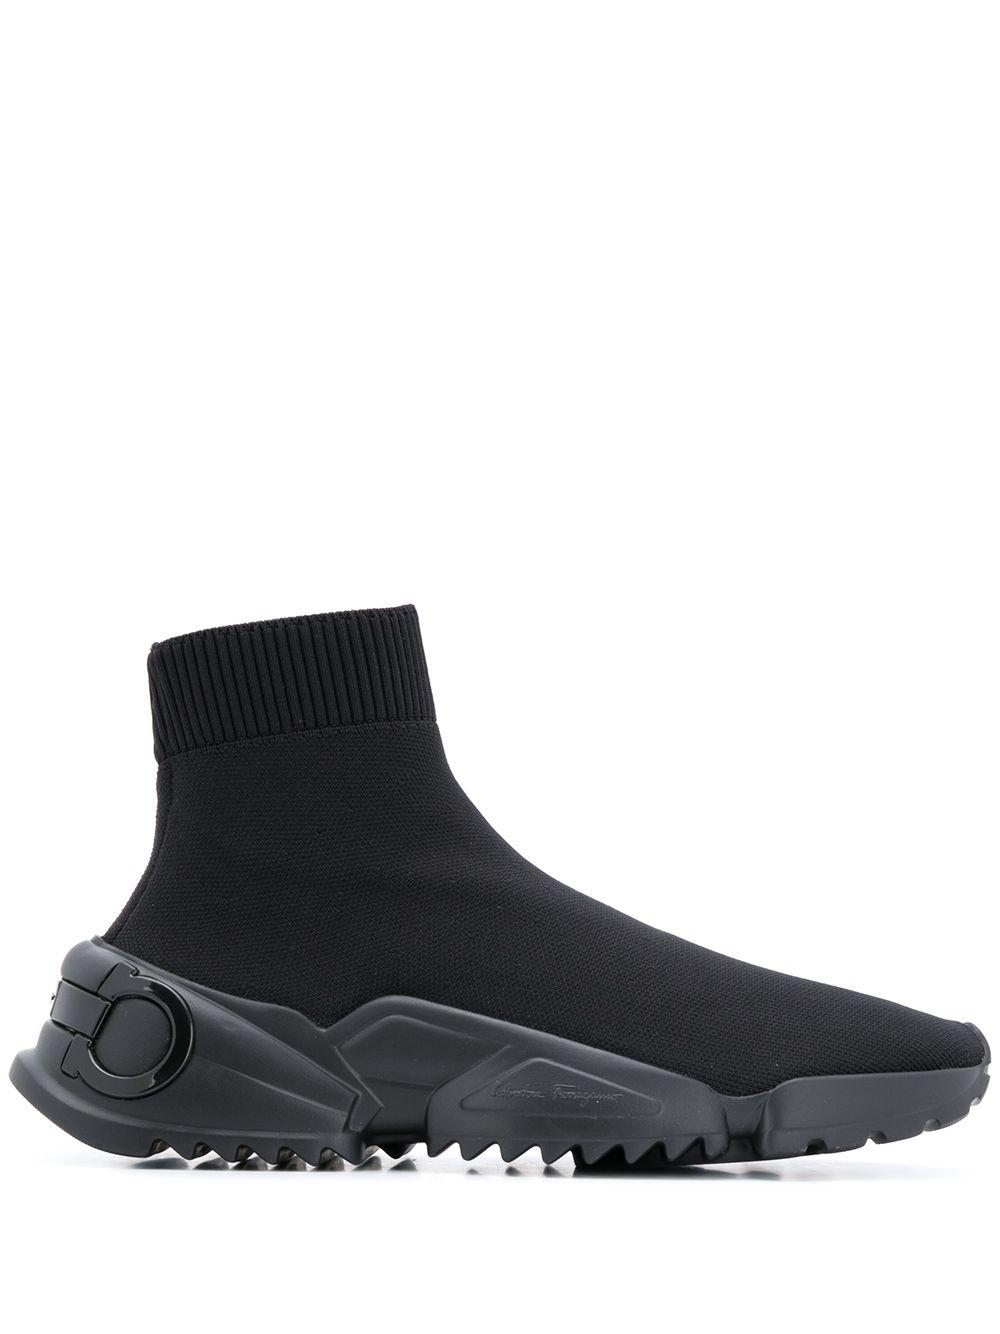 Ferragamo Synthetic Gancini Sock-style Sneakers in Black - Lyst